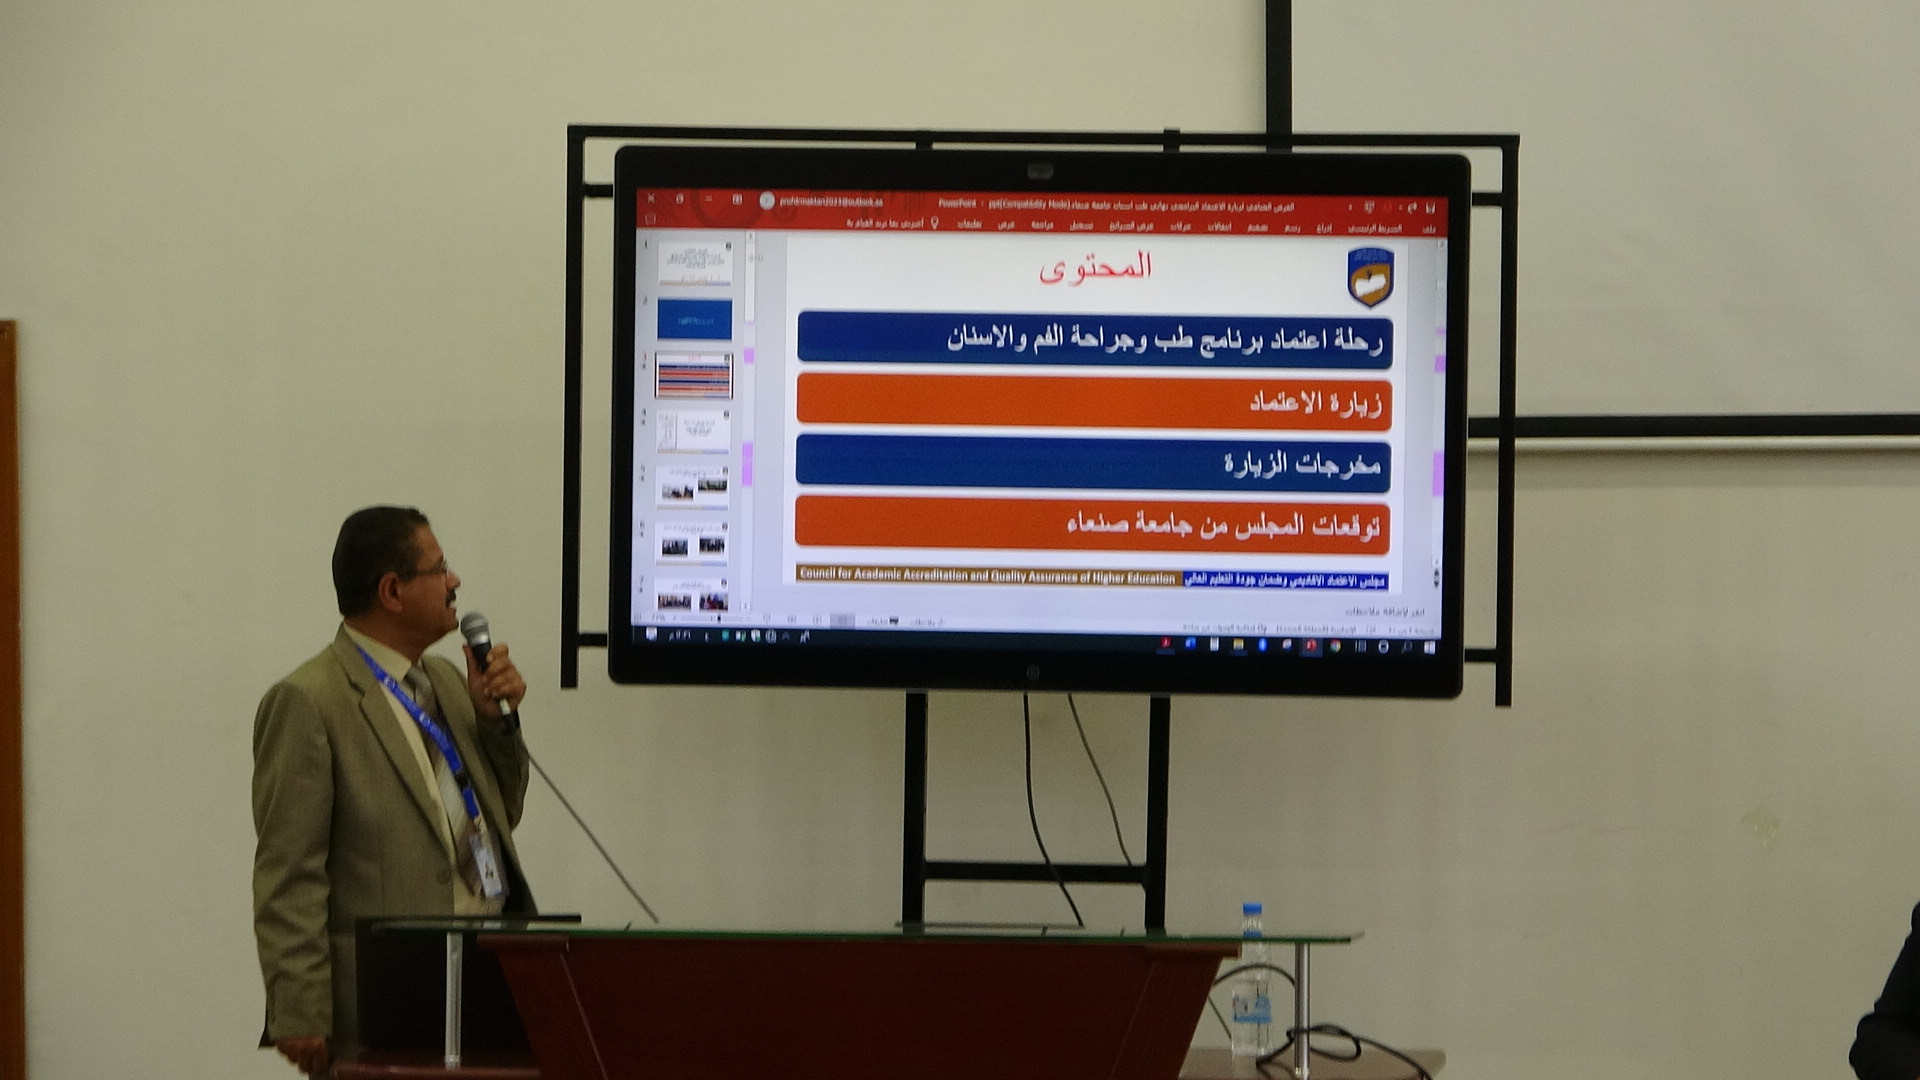 مجلس الاعتماد الأكاديمي يستكمل تقييم برنامج طب الأسنان بجامعة صنعاء